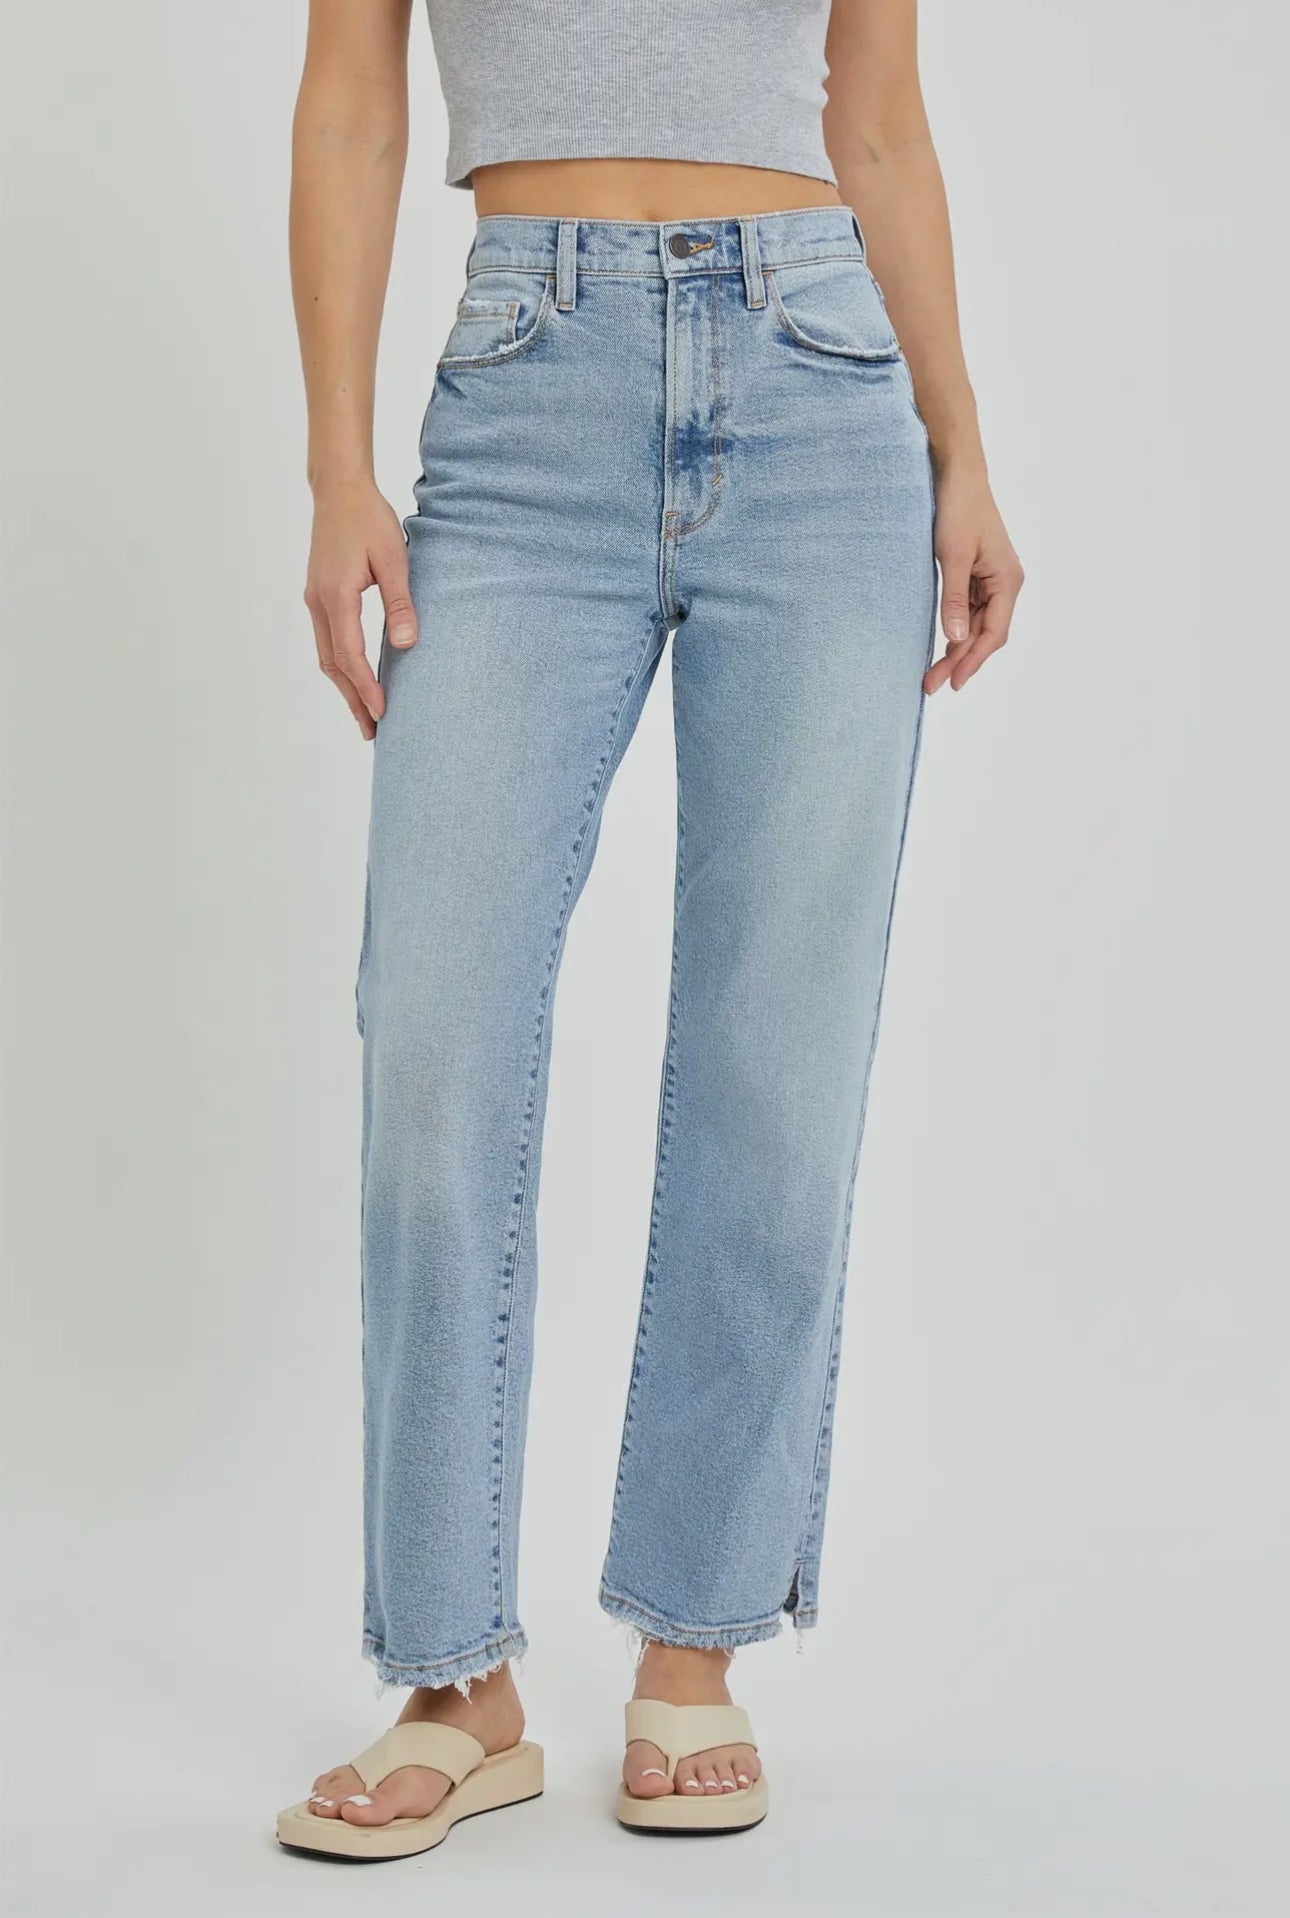 Camri Jeans